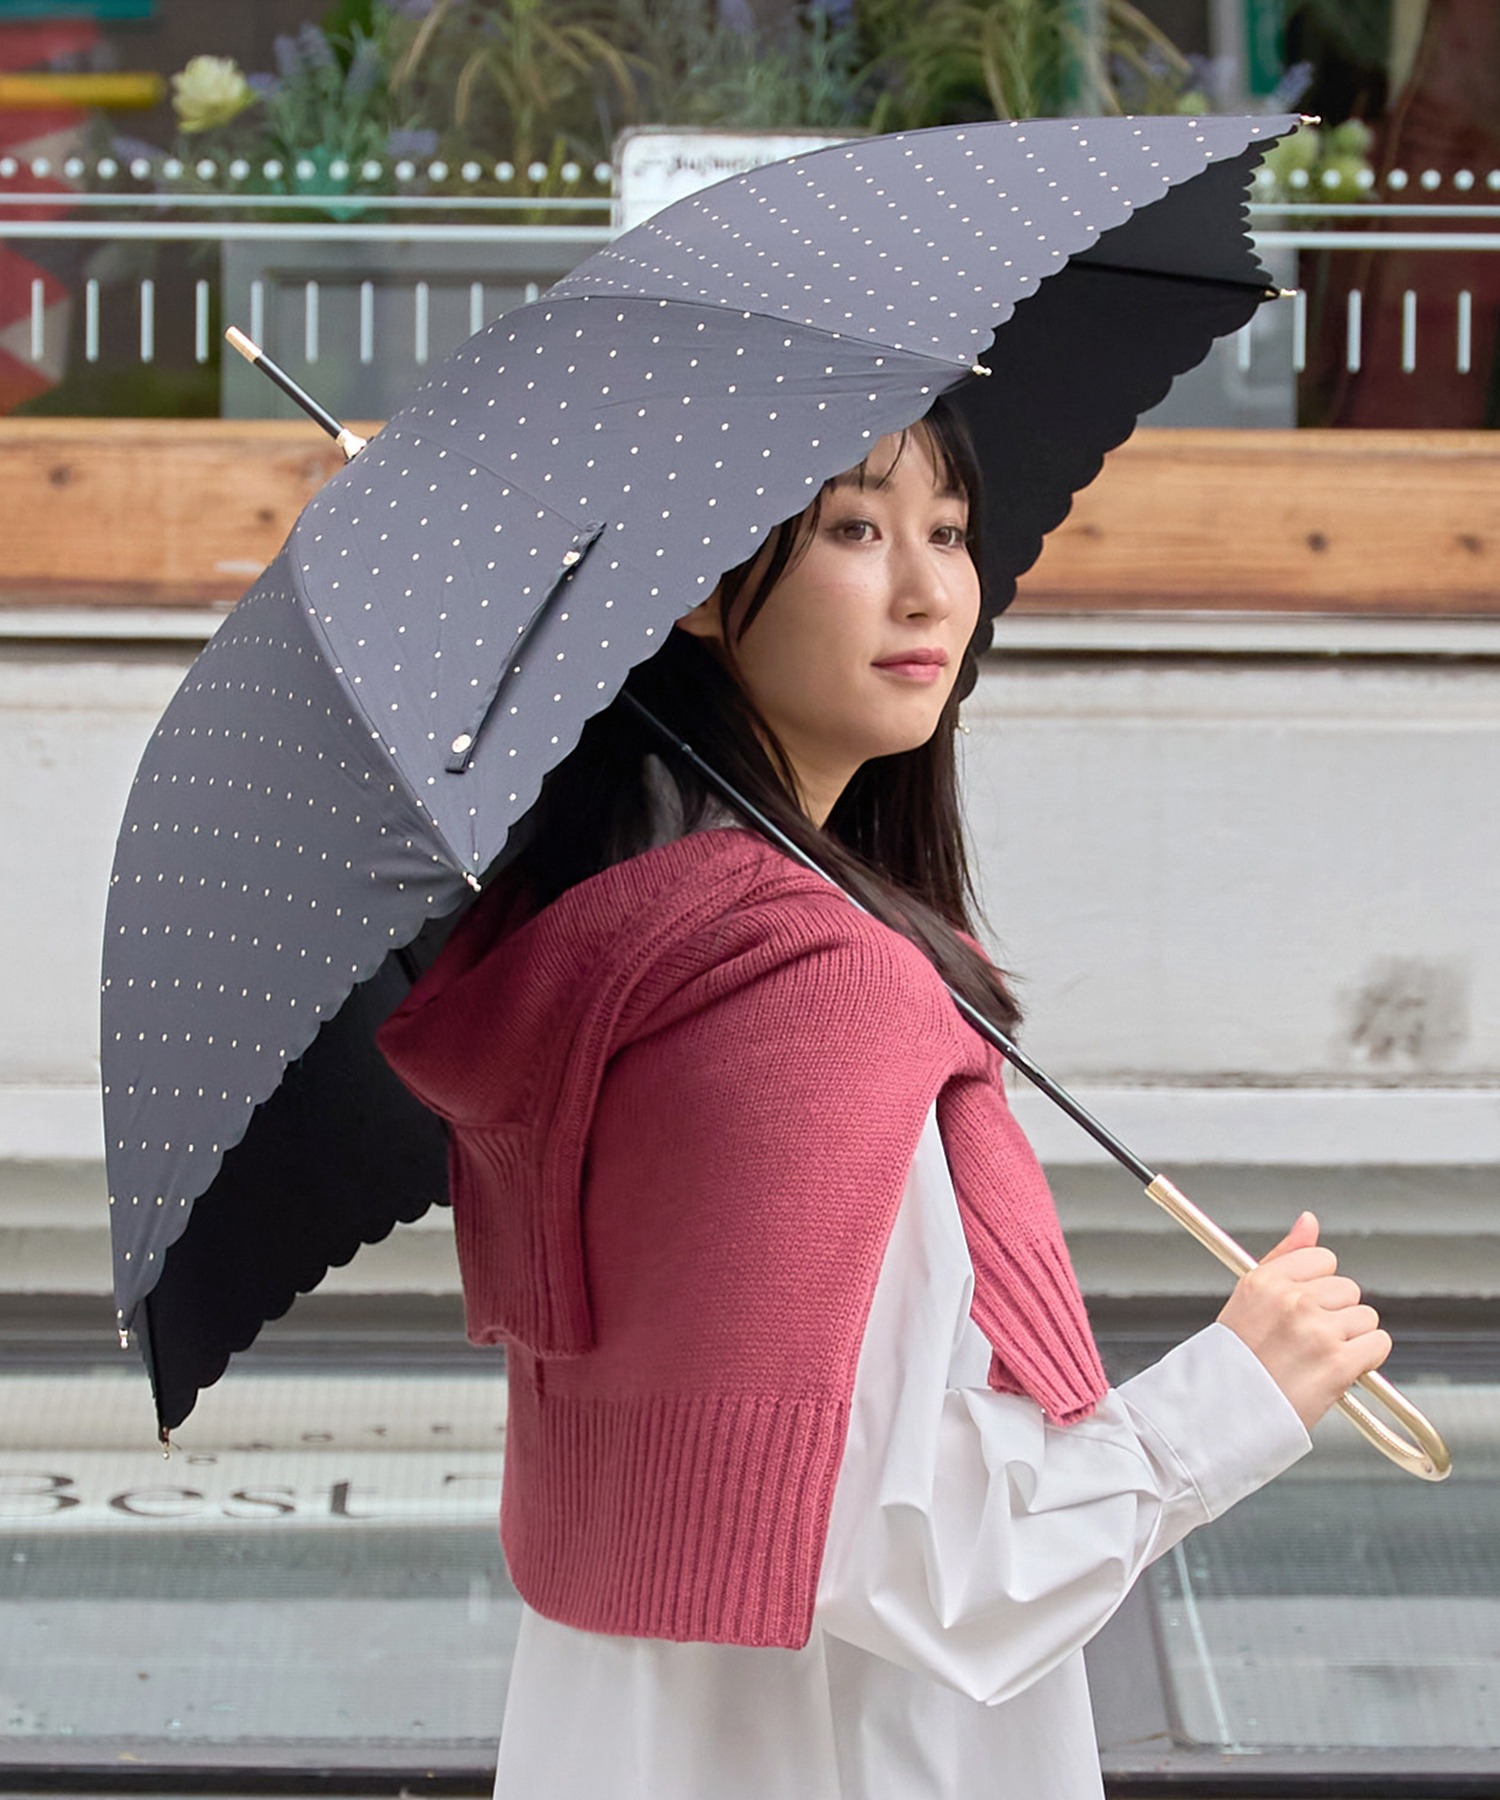 パープル 花  折りたたみ傘 晴雨兼用 UVカット 完全遮光 紫外線 日傘 雨傘